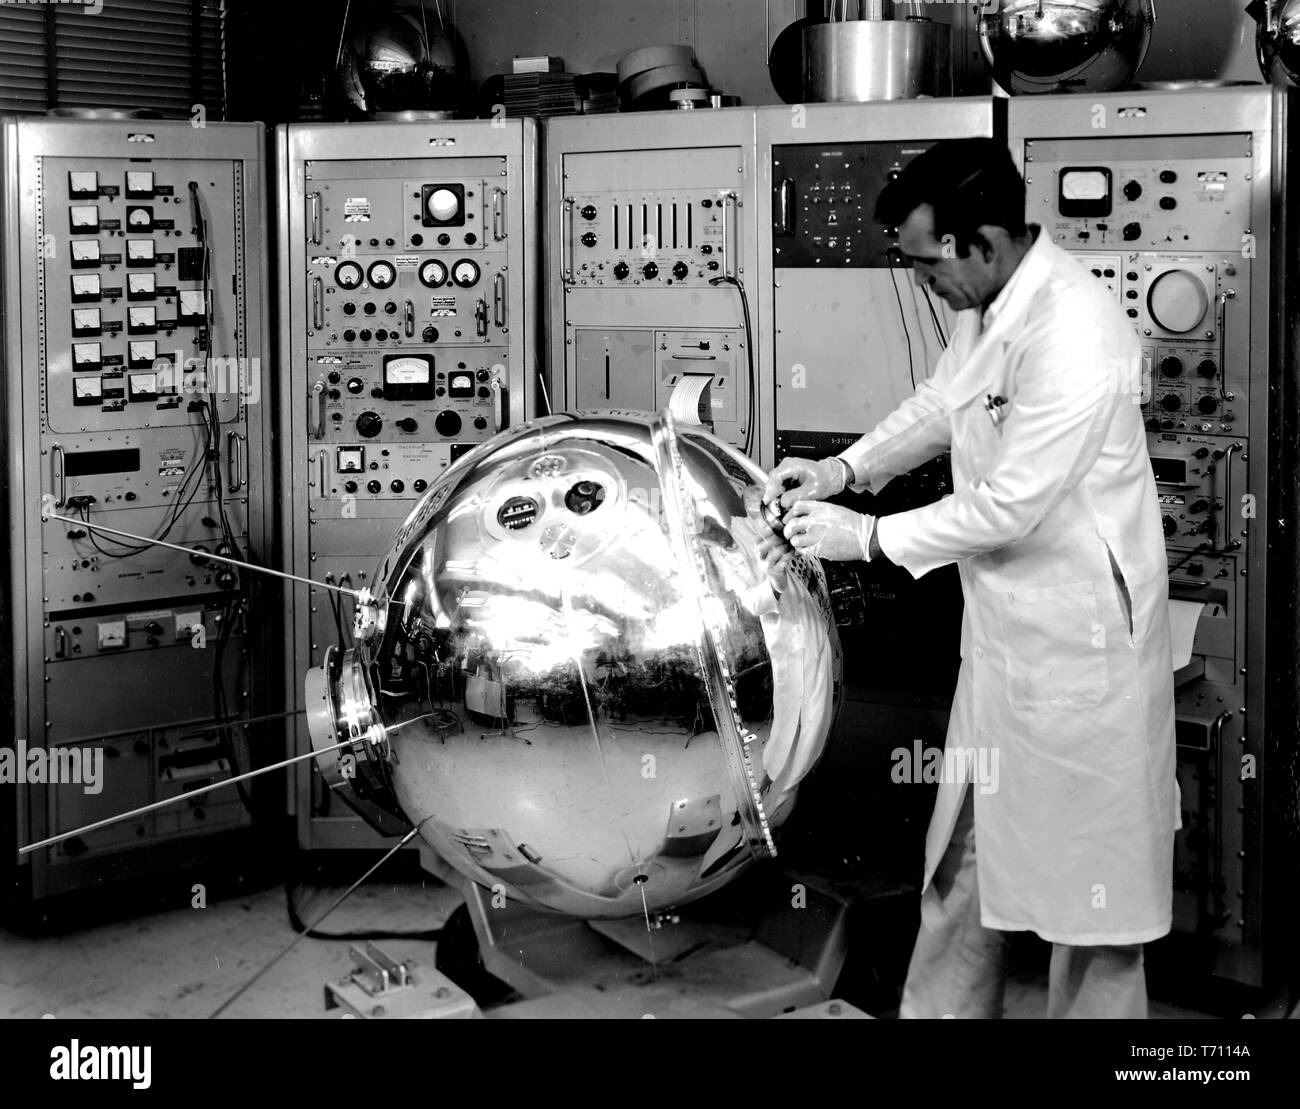 Ingegnere della NASA la preparazione di Esplora risorse del XVII satellite per il lancio da Cape Canaveral, in Florida, 1963. Immagine cortesia Nazionale Aeronautica e Spaziale Administration (NASA). () Foto Stock